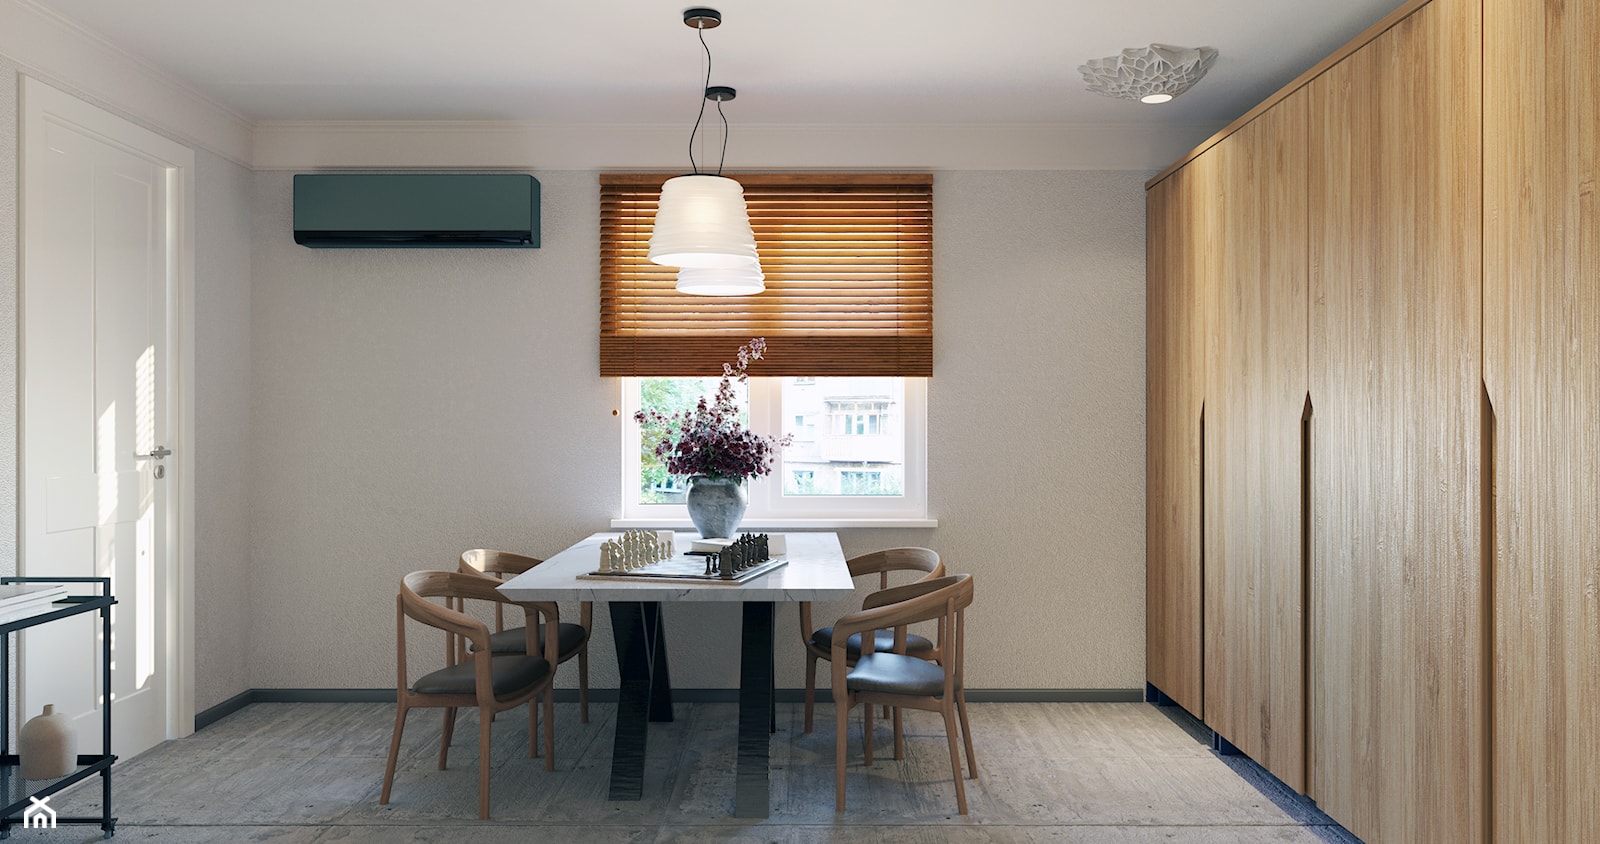 Kuchni - Duża zamknięta szara kuchnia jednorzędowa z oknem, styl minimalistyczny - zdjęcie od Design Time - Homebook